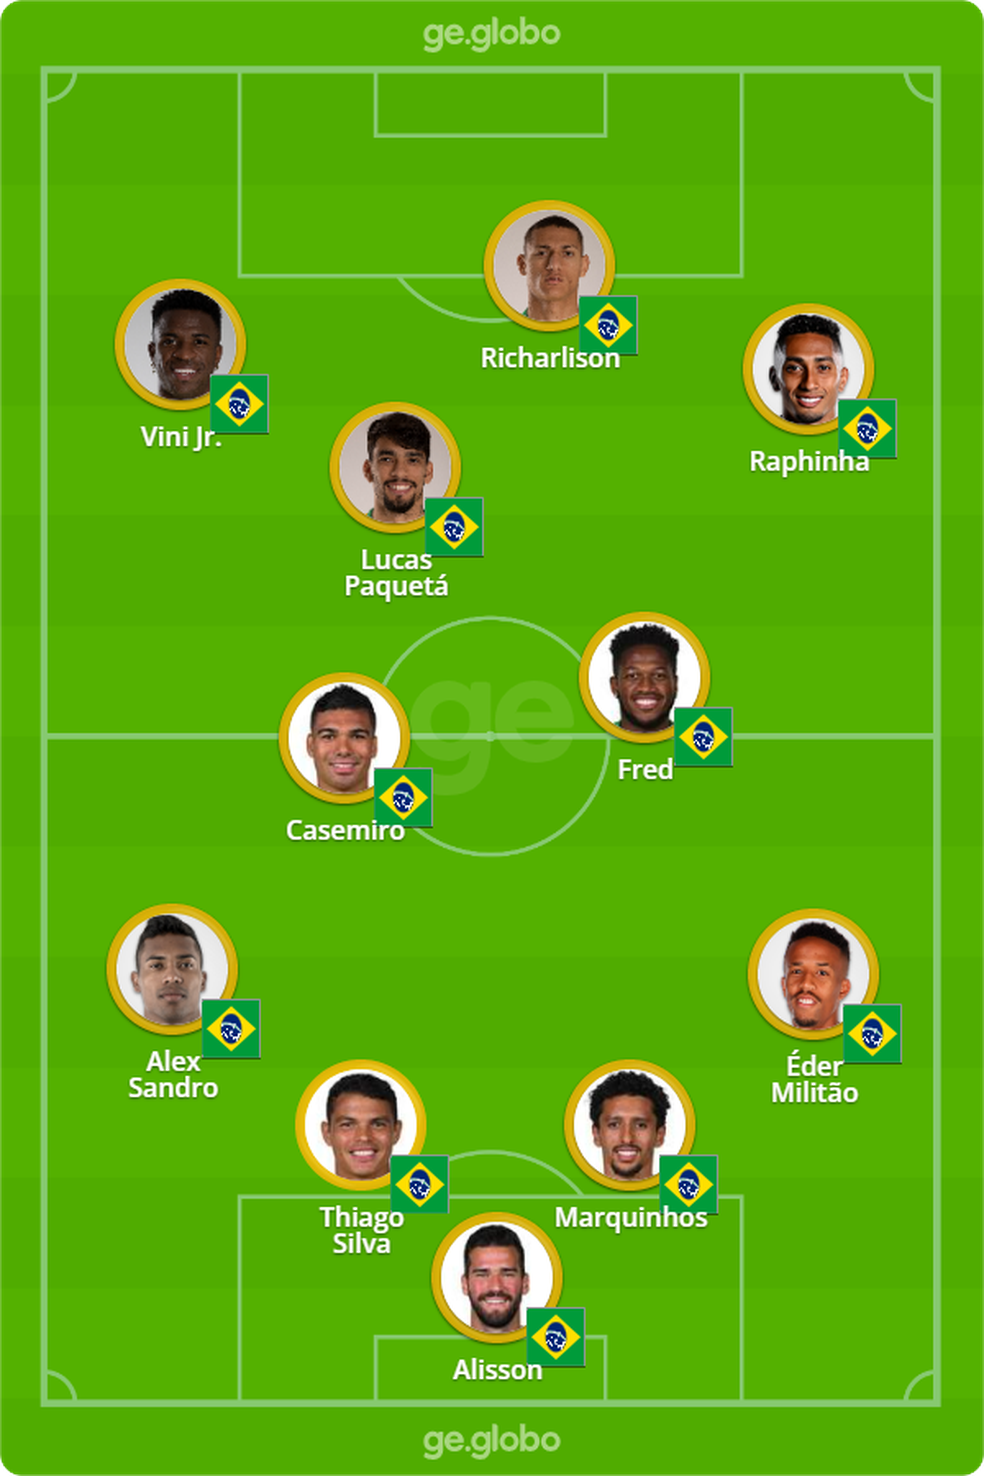 Provável escalação da seleção brasileira para enfrentar a Suíça — Foto: ge